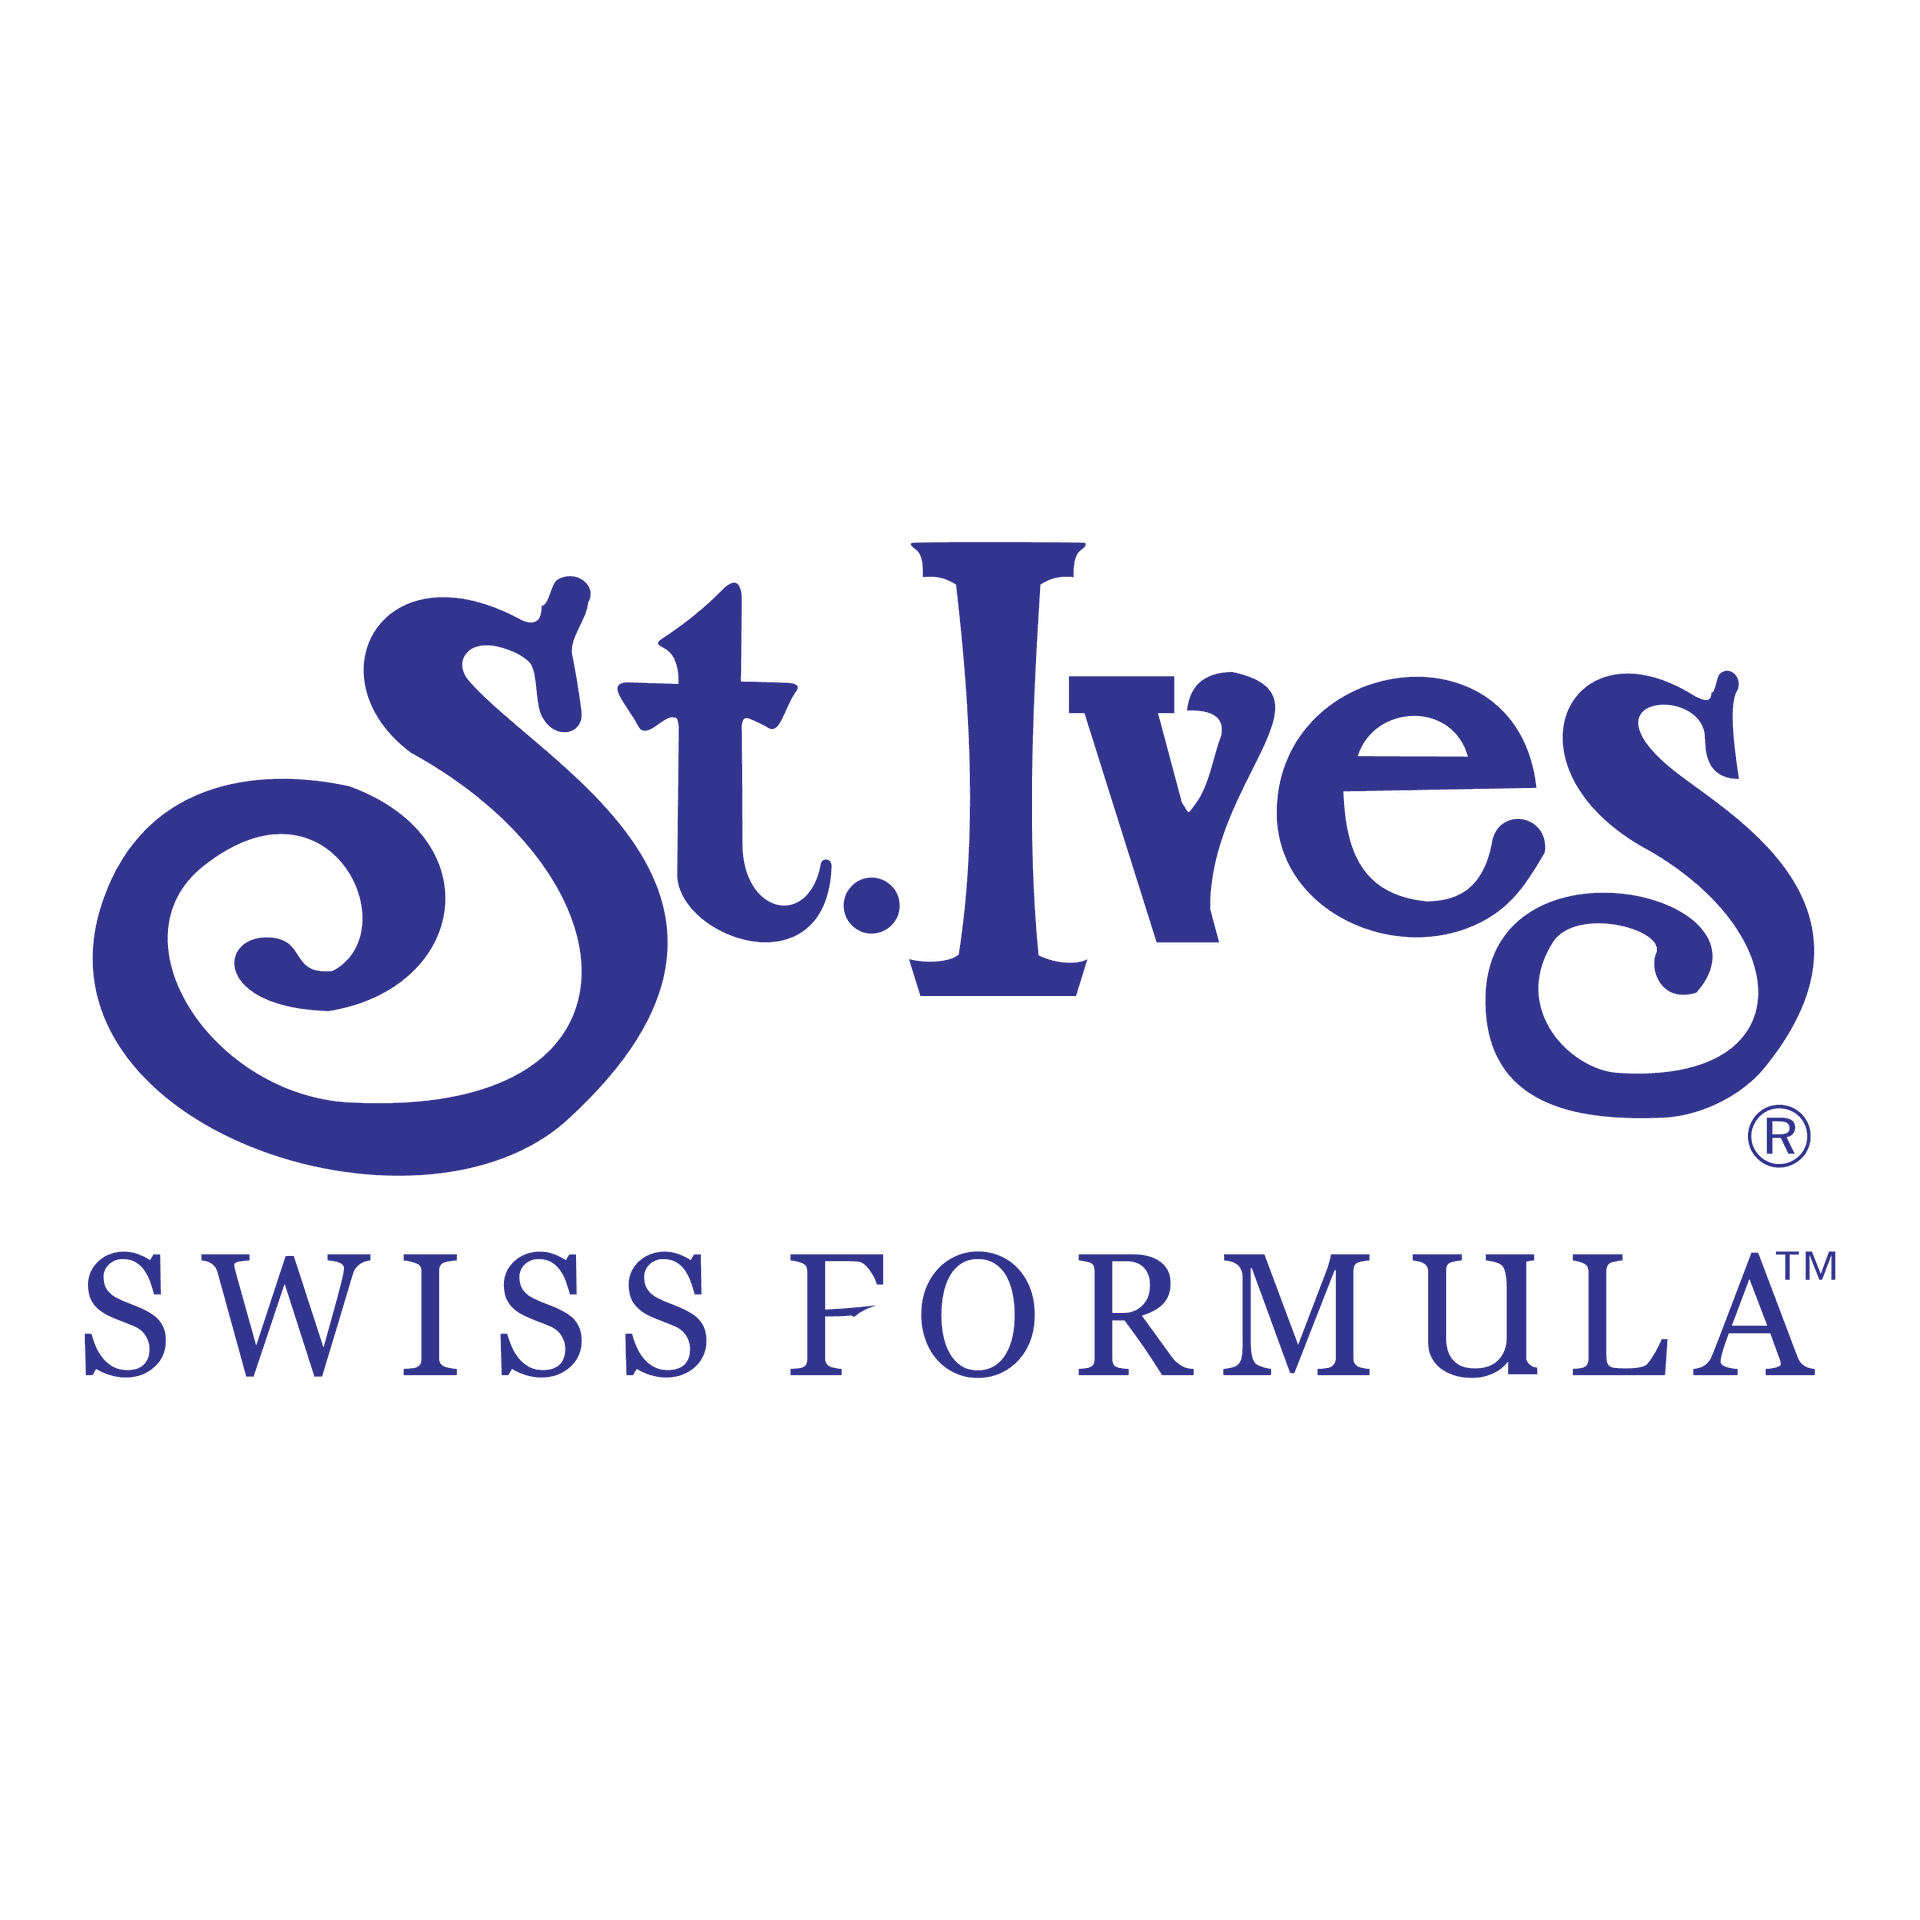 Brand: St. Ives